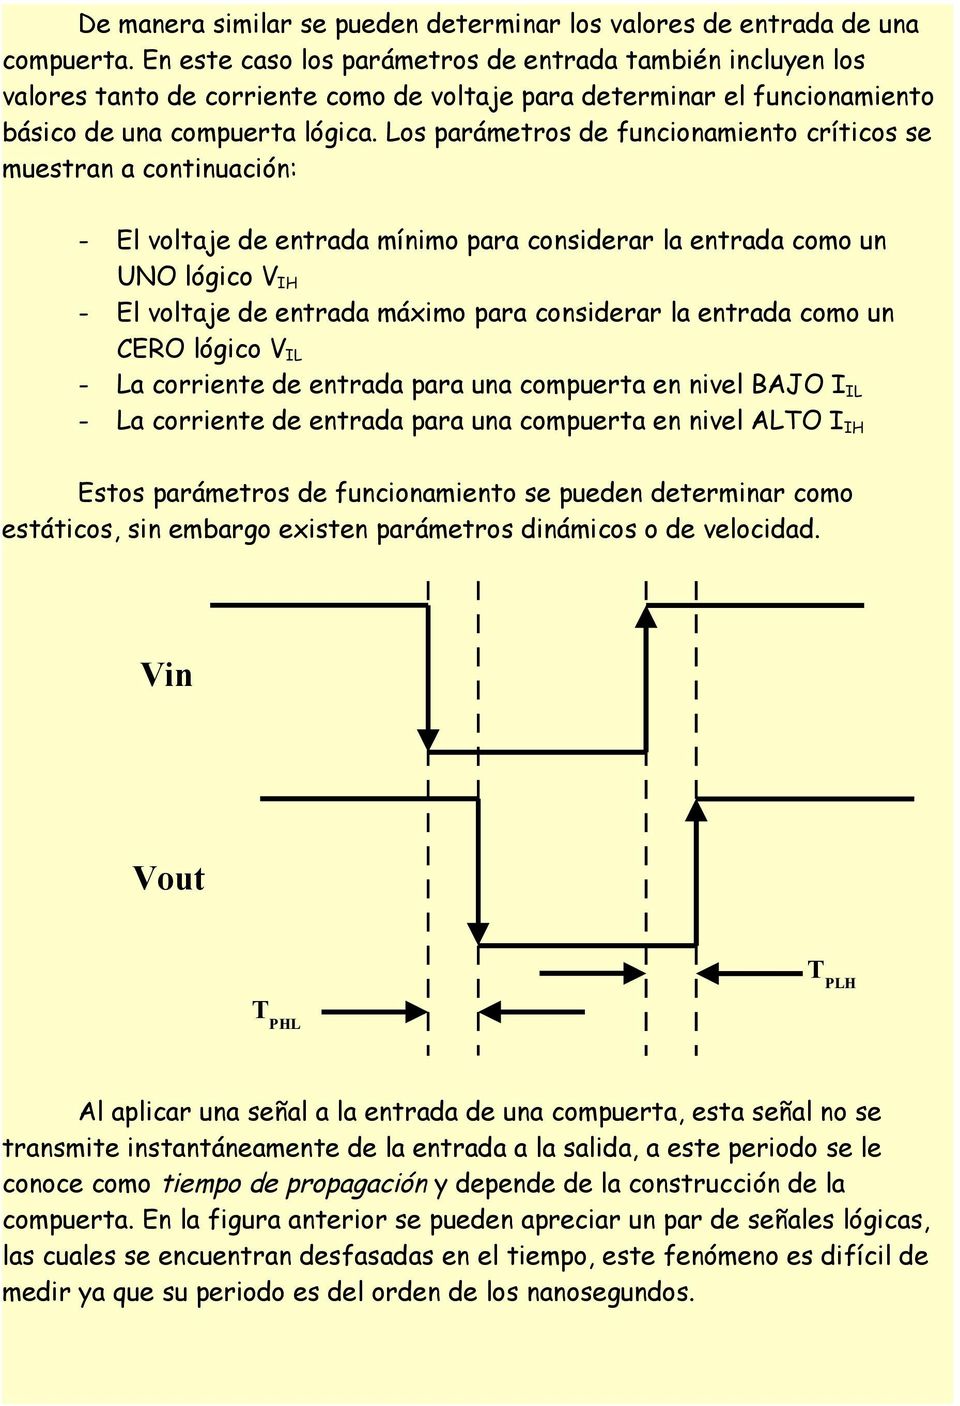 Los parámetros de funcionamiento críticos se muestran a continuación: - El voltaje de entrada mínimo para considerar la entrada como un UNO lógico V IH - El voltaje de entrada máximo para considerar